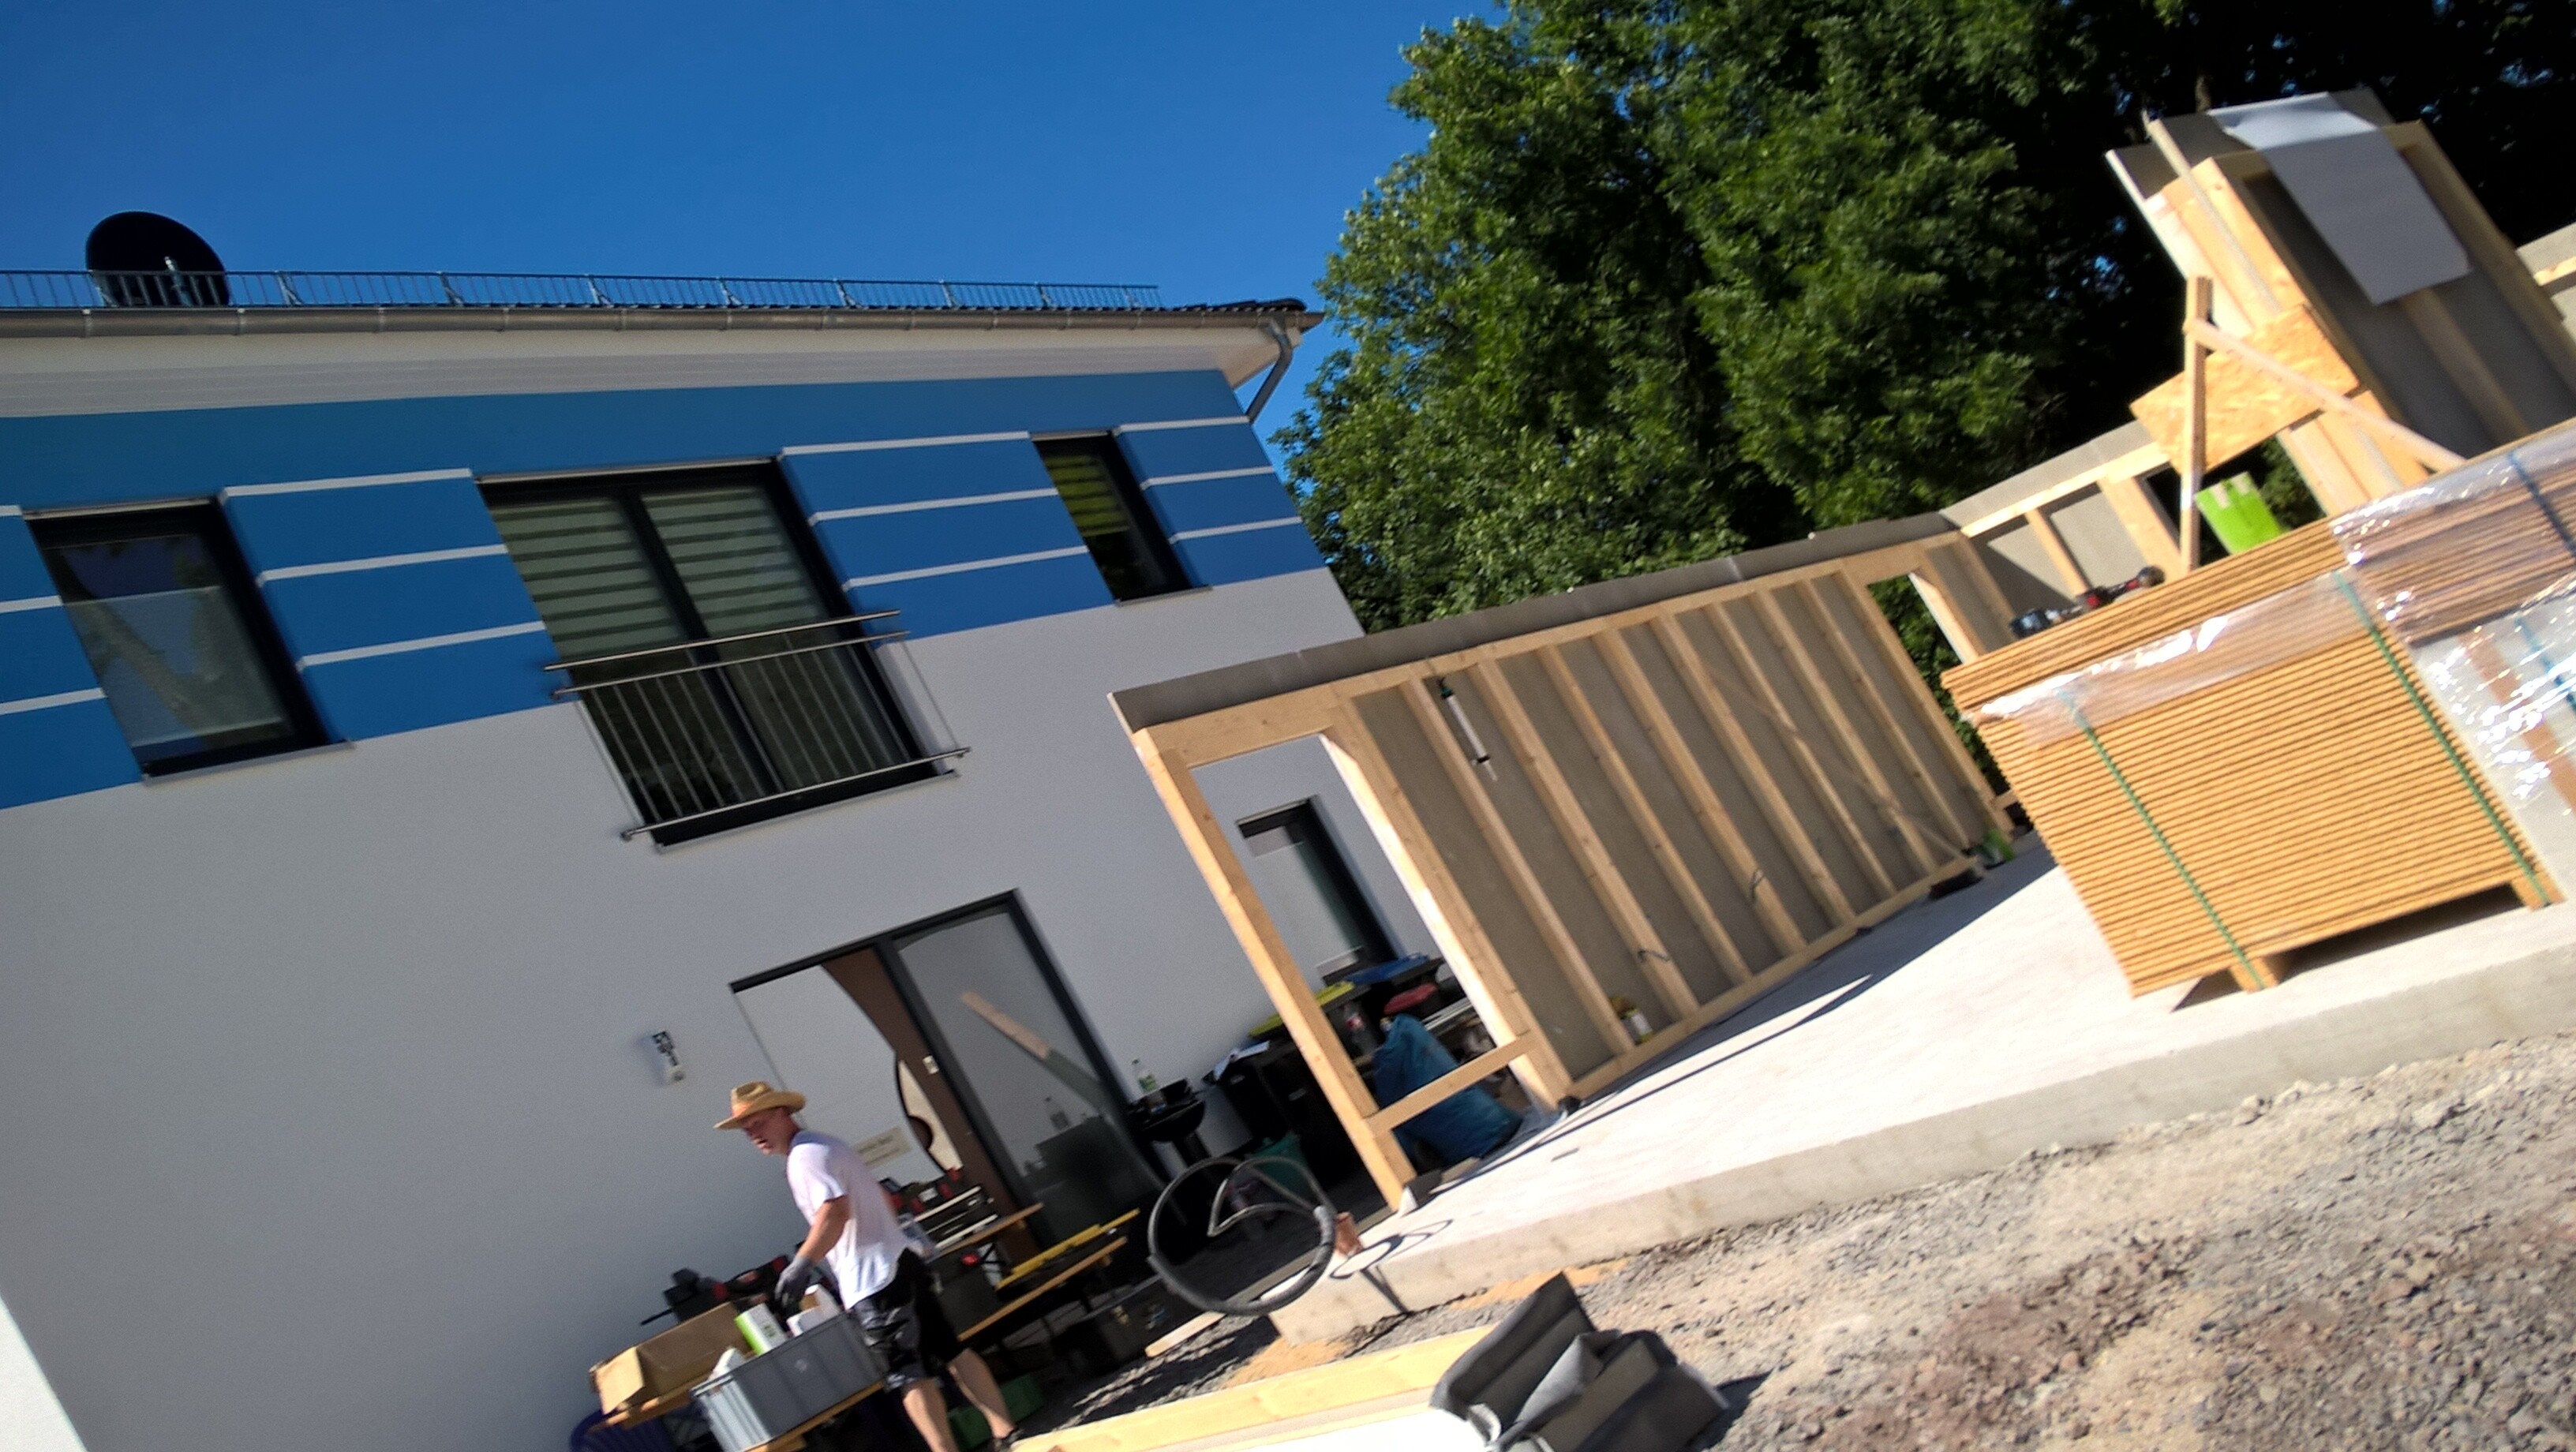 Aufbau Fink Garage in Holzständerbauweise in Gera.